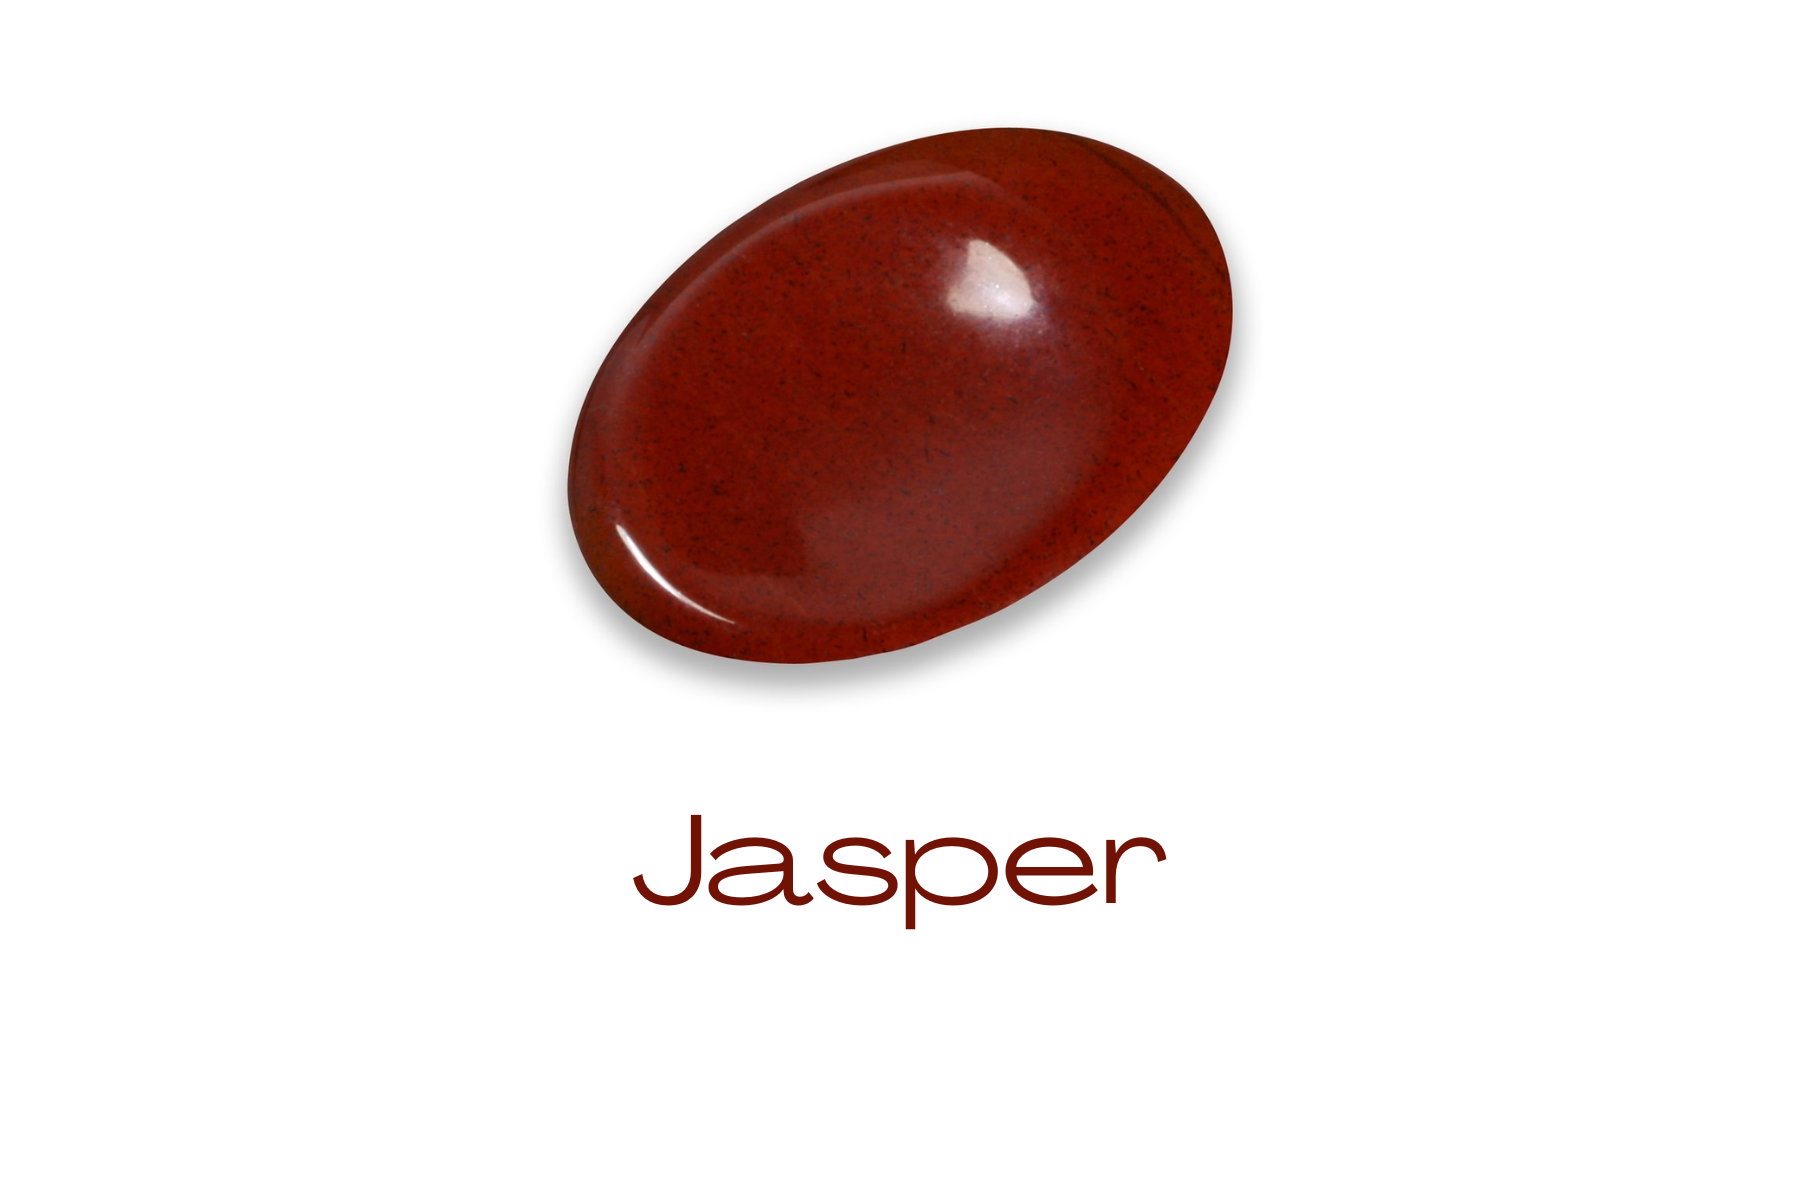 Oblong deep red jasper